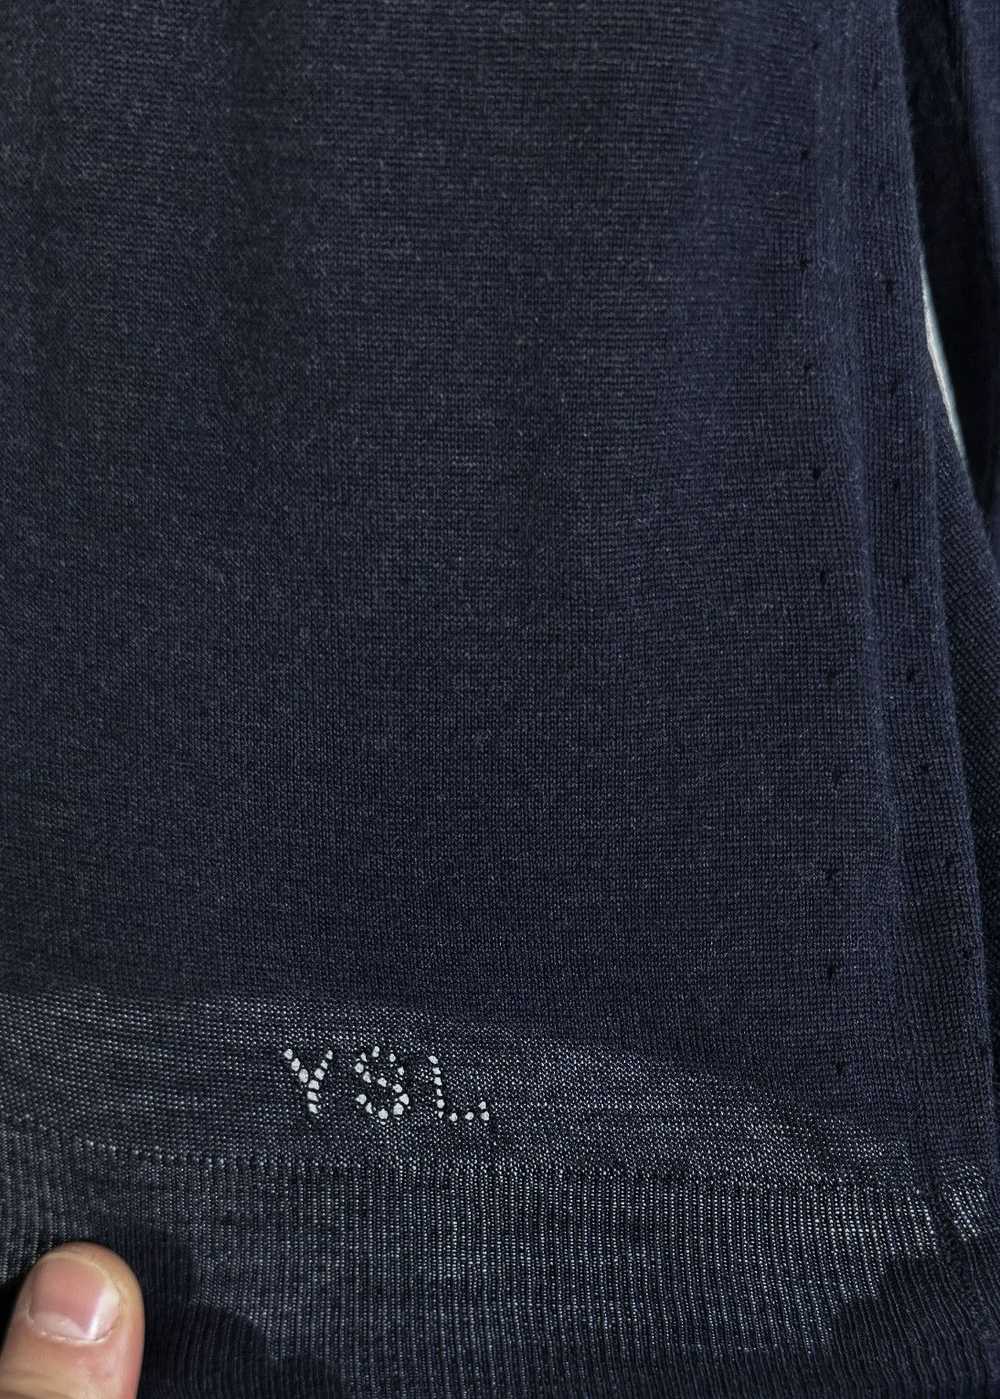 Yves Saint Laurent Yves Saint Laurent Navy Wool V… - image 5